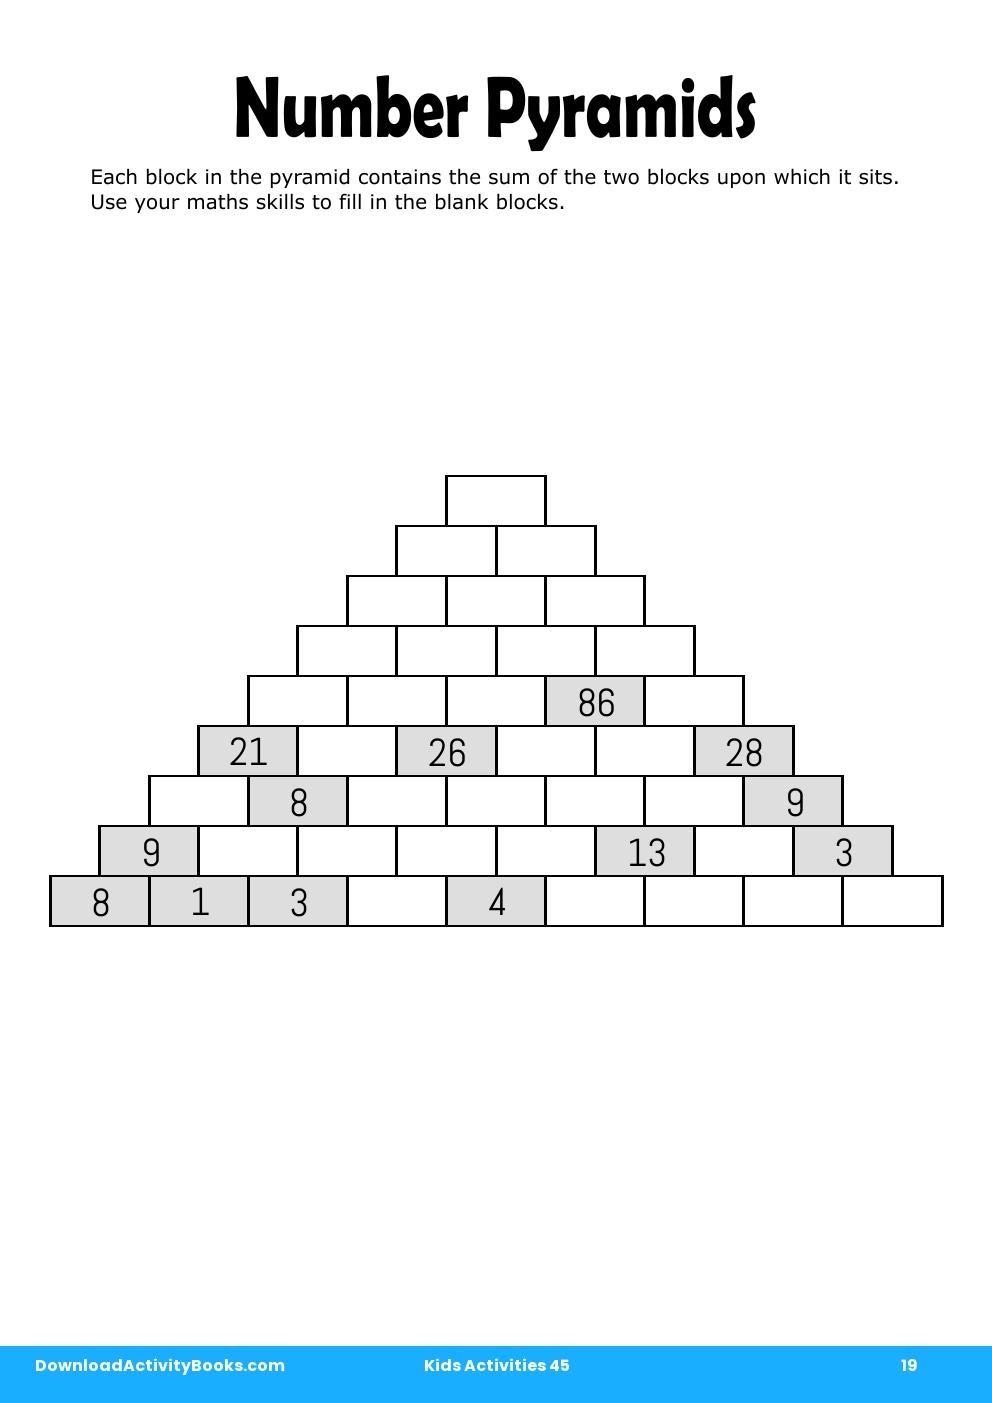 Number Pyramids in Kids Activities 45